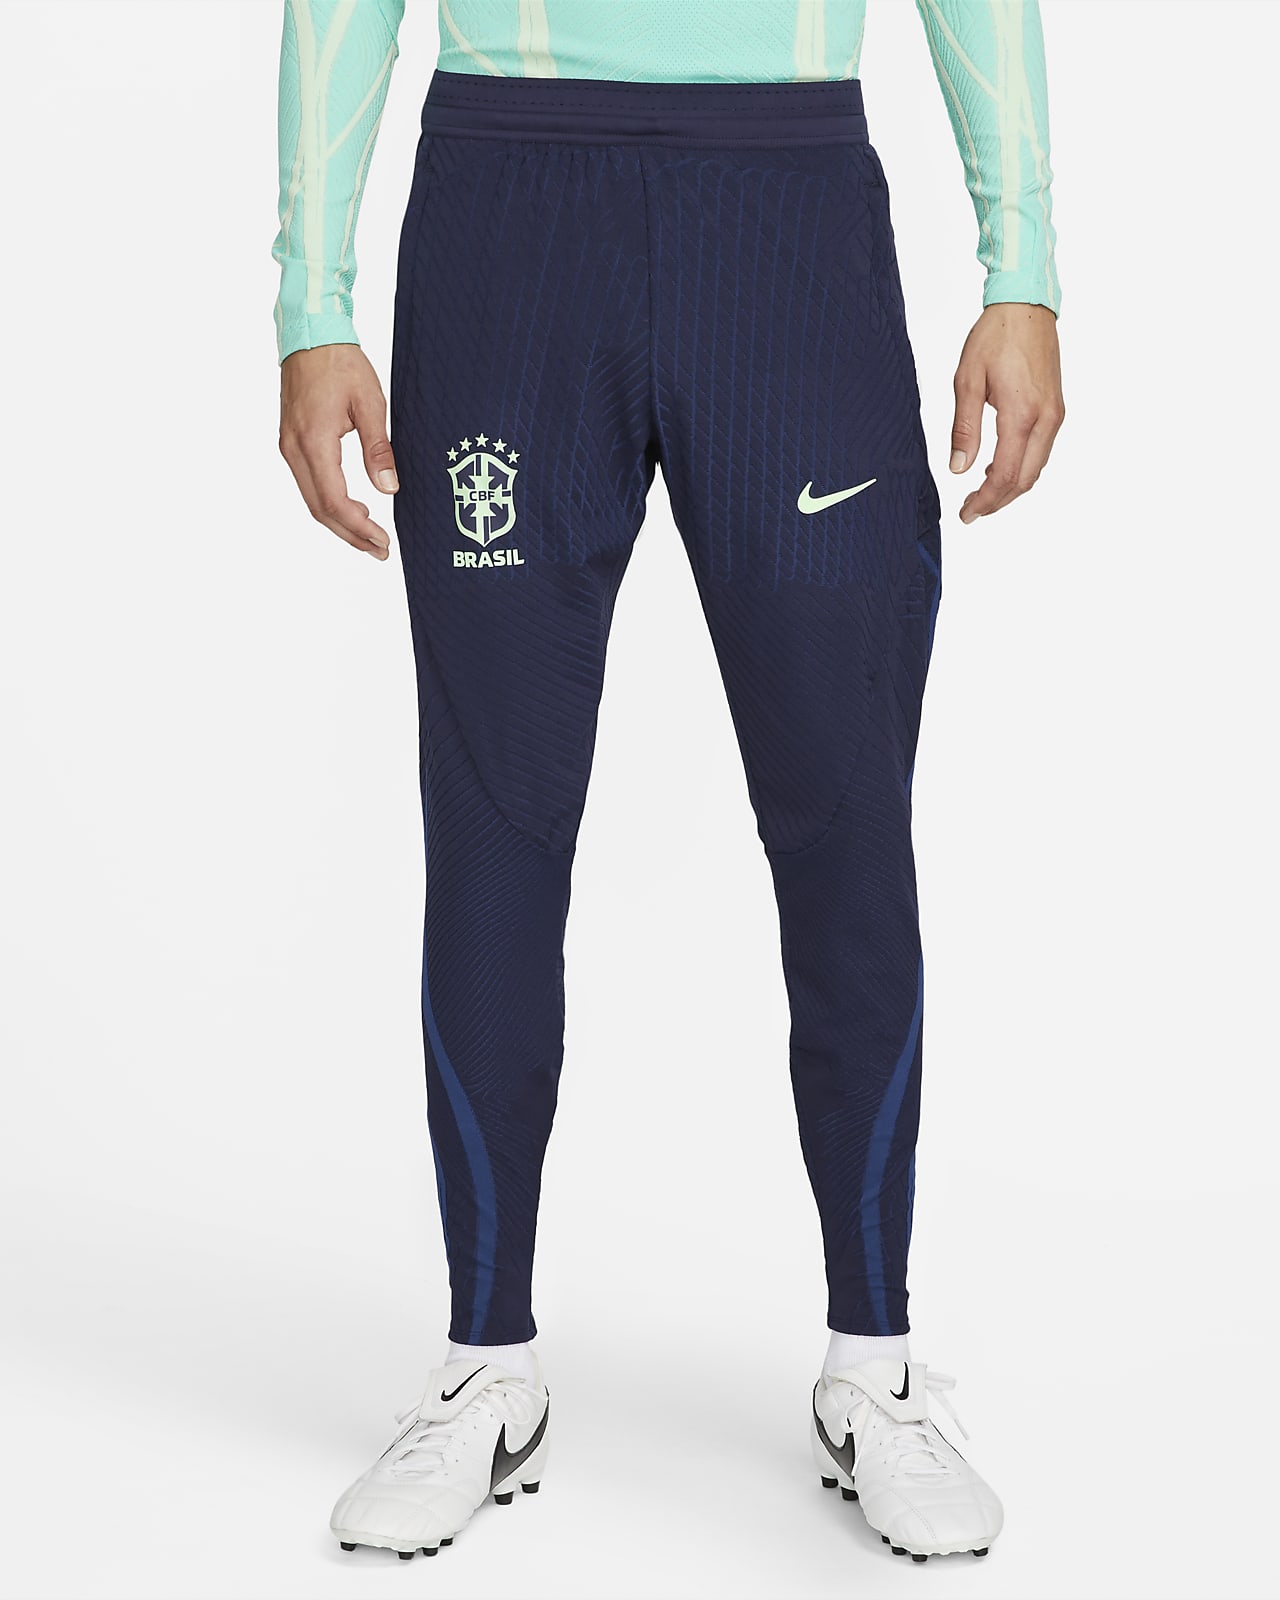 molecuul Peer ondergoed Brazilië Strike Elite Nike Dri-FIT ADV knit voetbalbroek voor heren. Nike BE